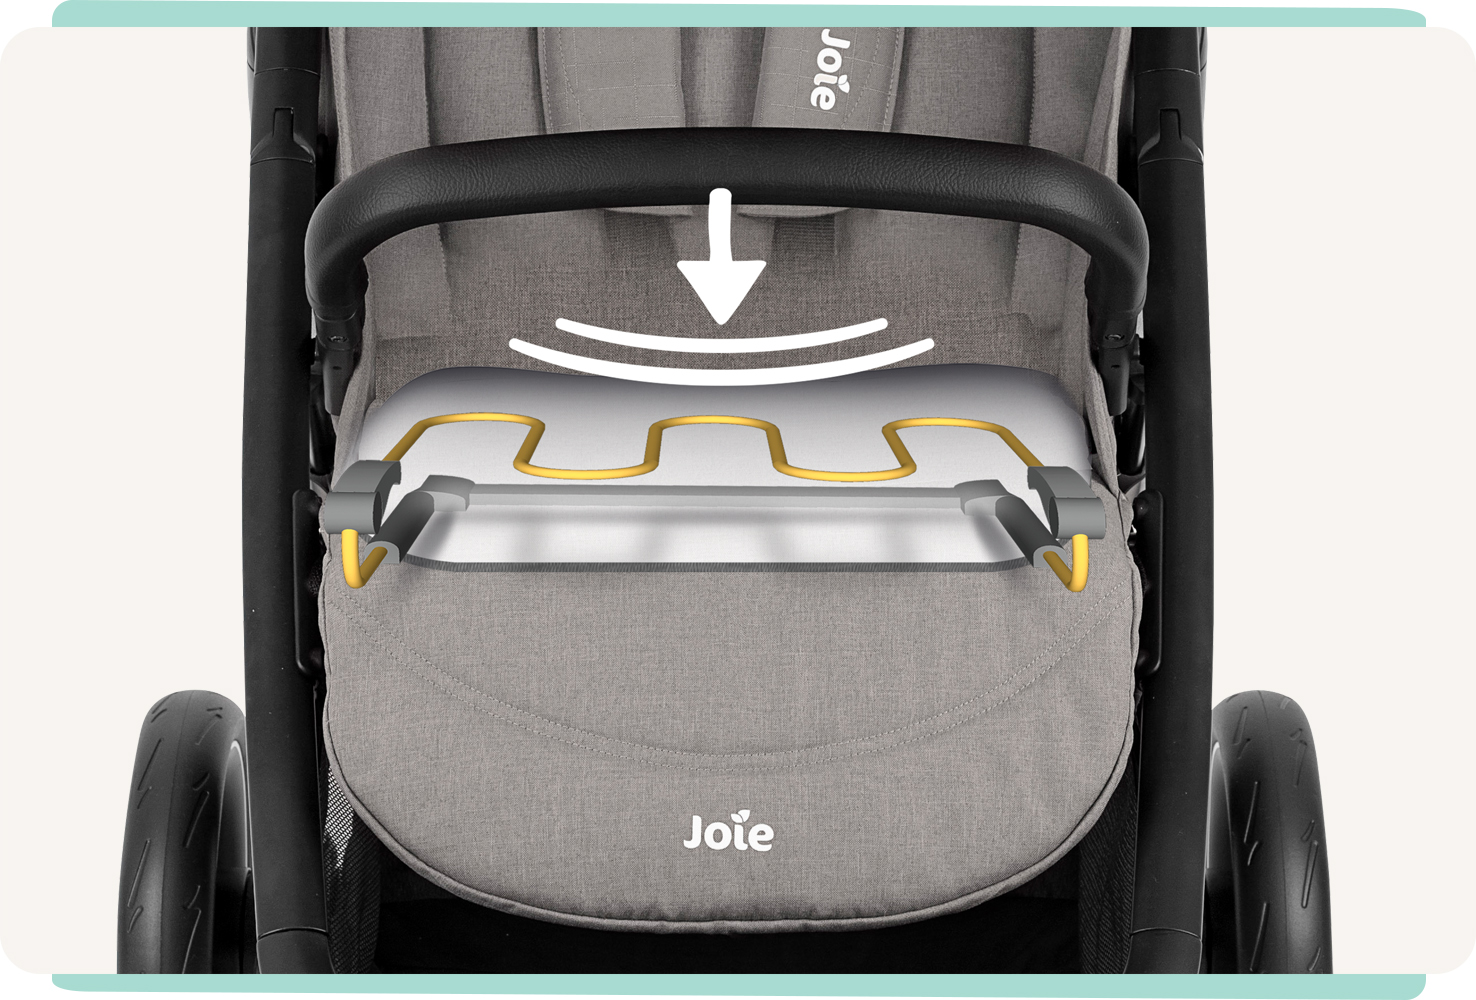 Joie litetrax 4 Kinderwagen in grau. Nahaufnahme des Sitzes mit Animation der flexiblen Feder.